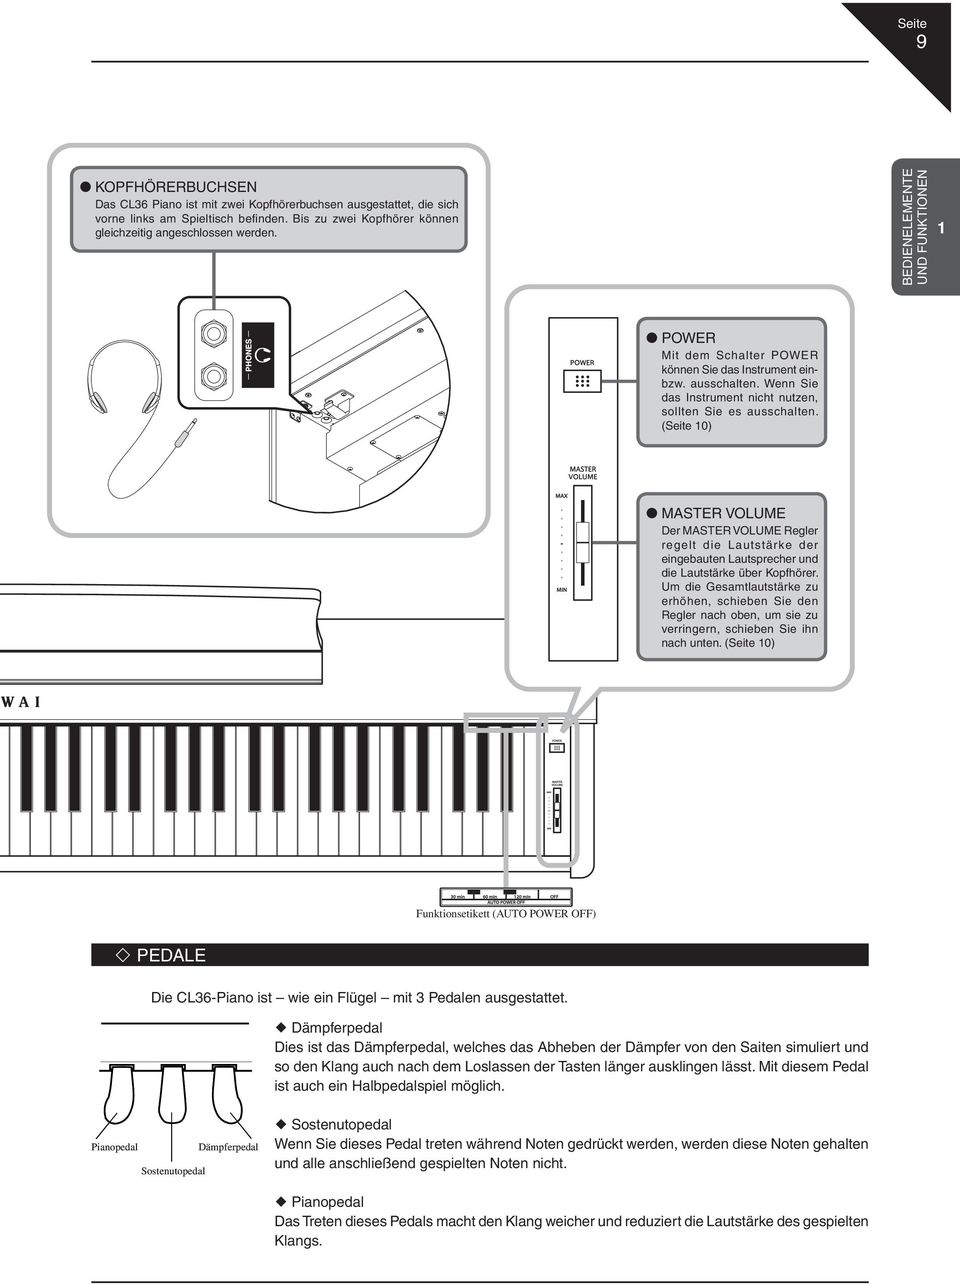 (Seite 10) MASTER VOLUME Der MASTER VOLUME Regler regelt die Lautstärke der eingebauten Lautsprecher und die Lautstärke über Kopfhörer.